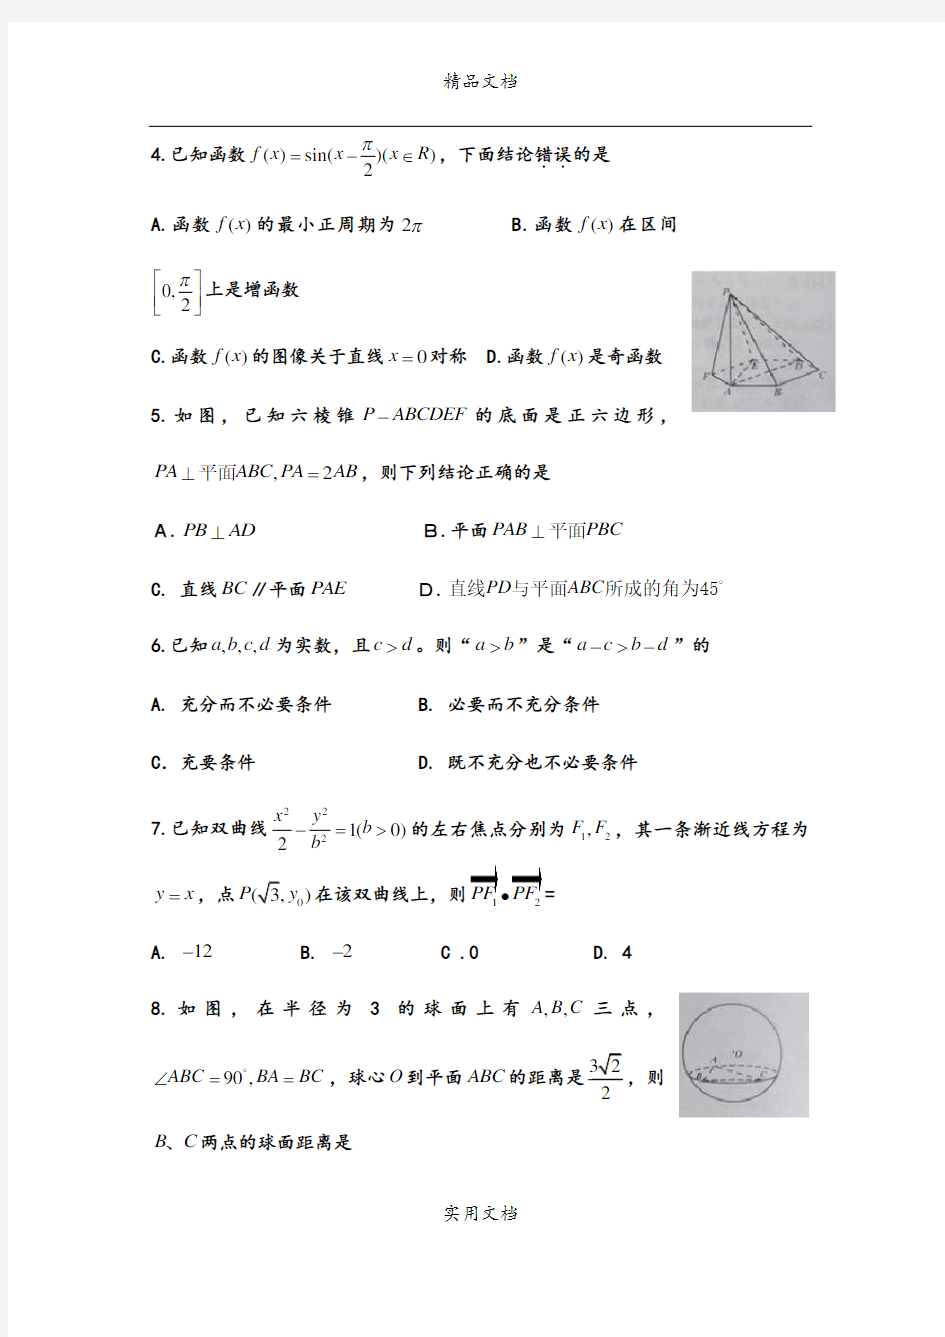 2009年全国高考理科数学试题及答案-四川卷